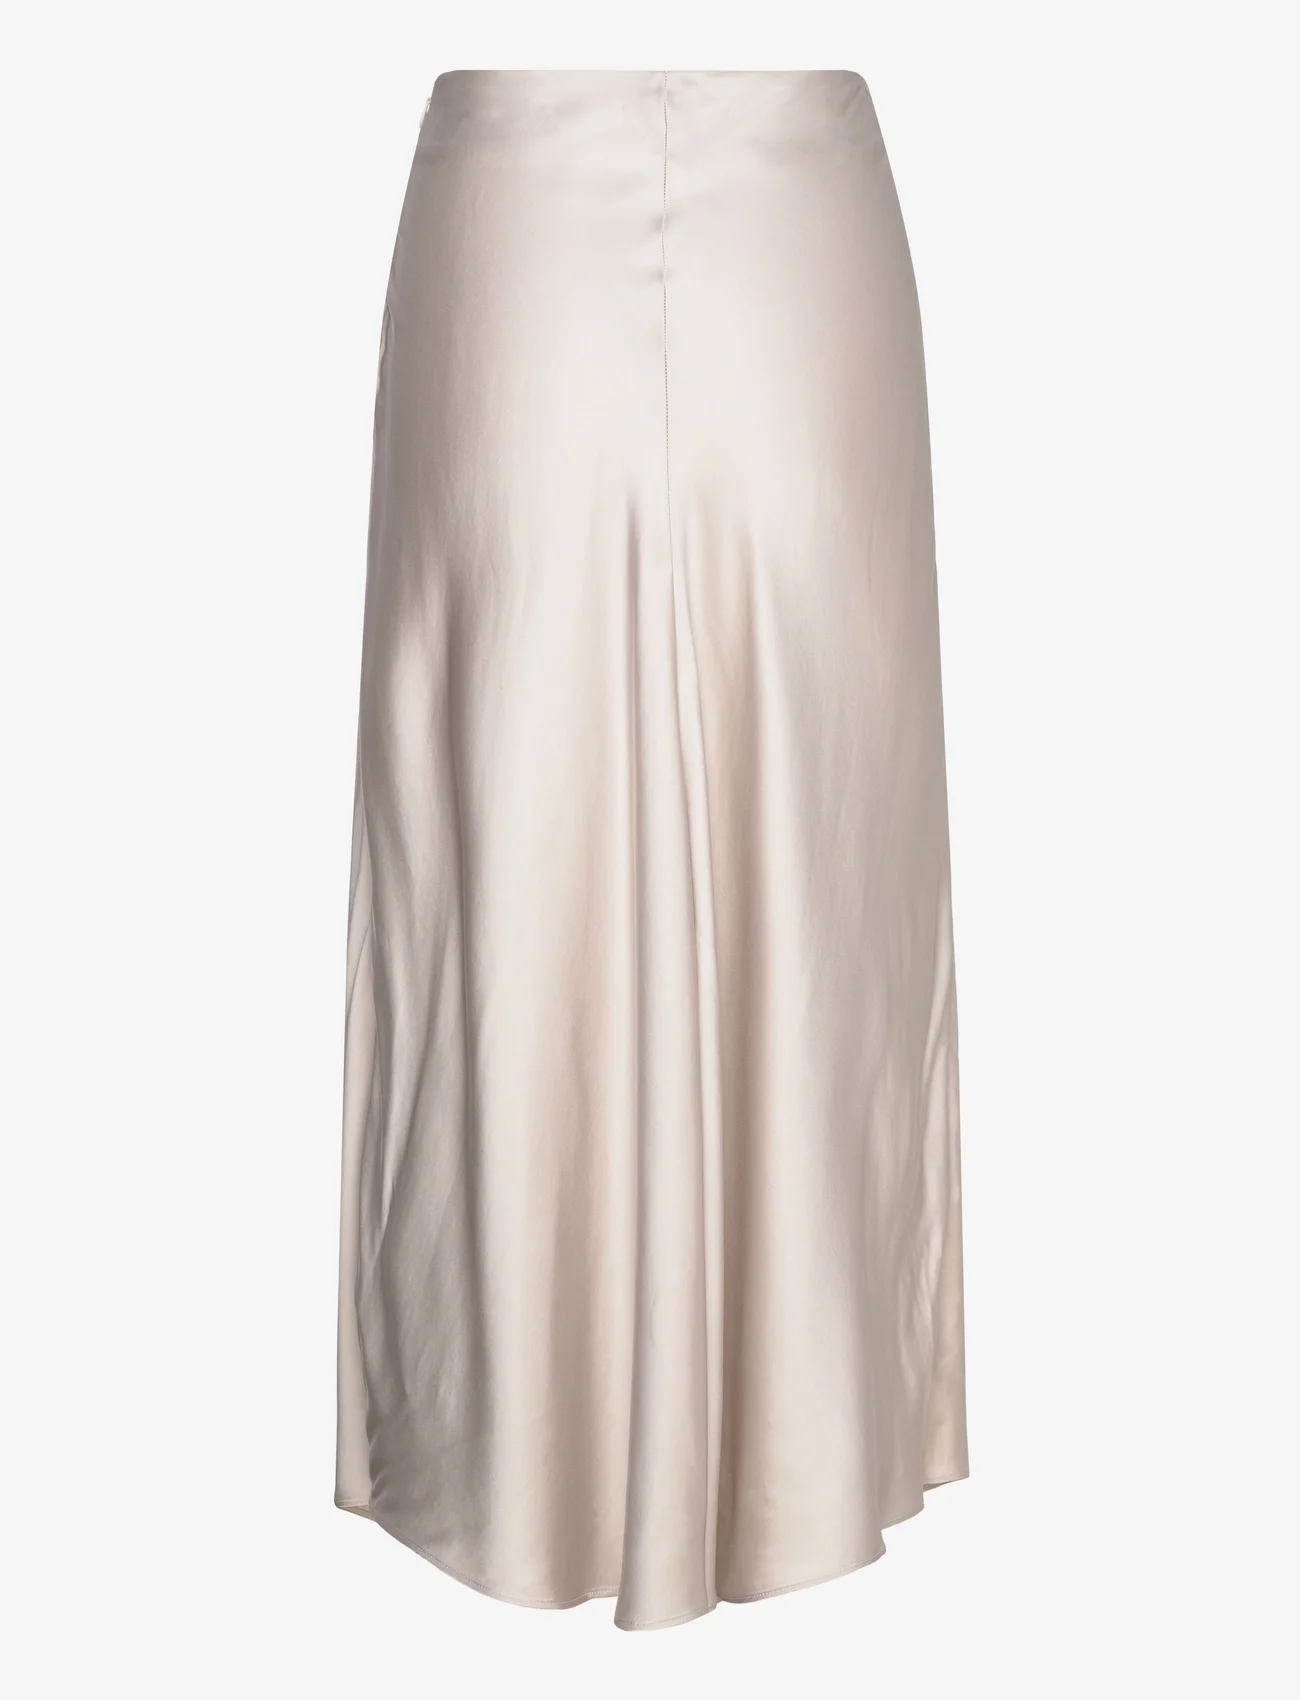 Esprit Casual - Skirts light woven - satengskjørt - light beige - 1